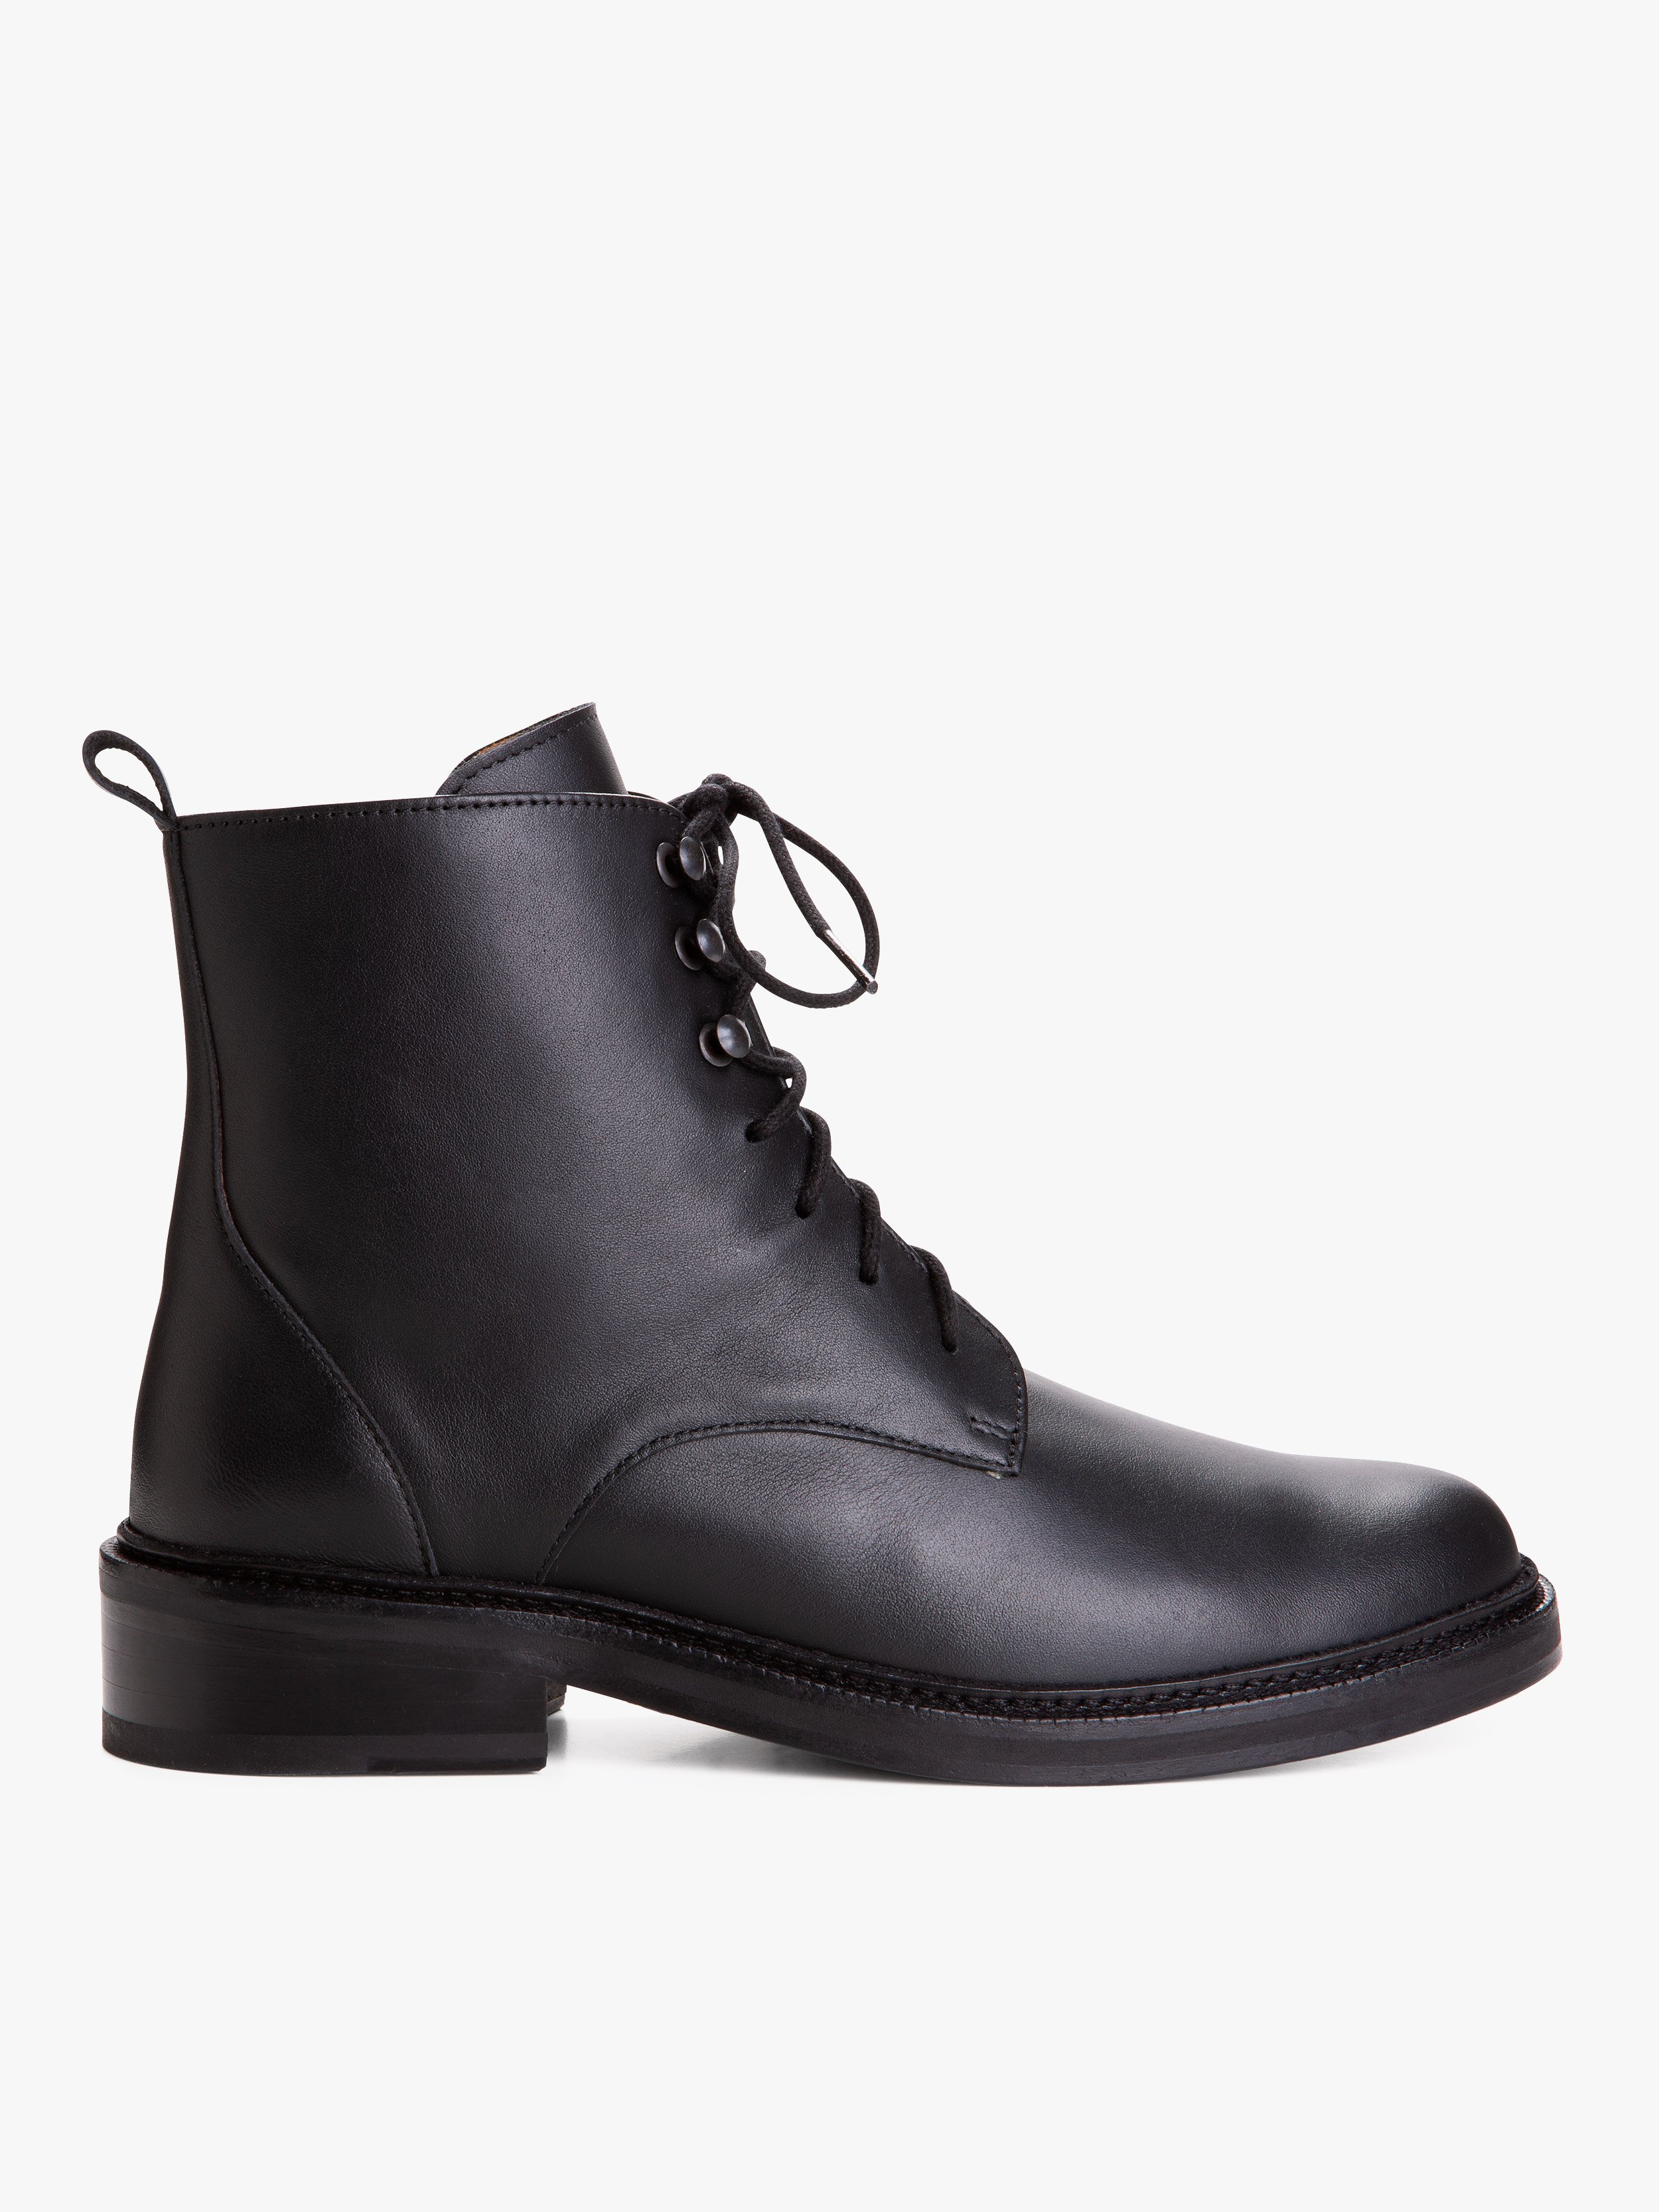 black leather Zoe ankle boots | agnès b.